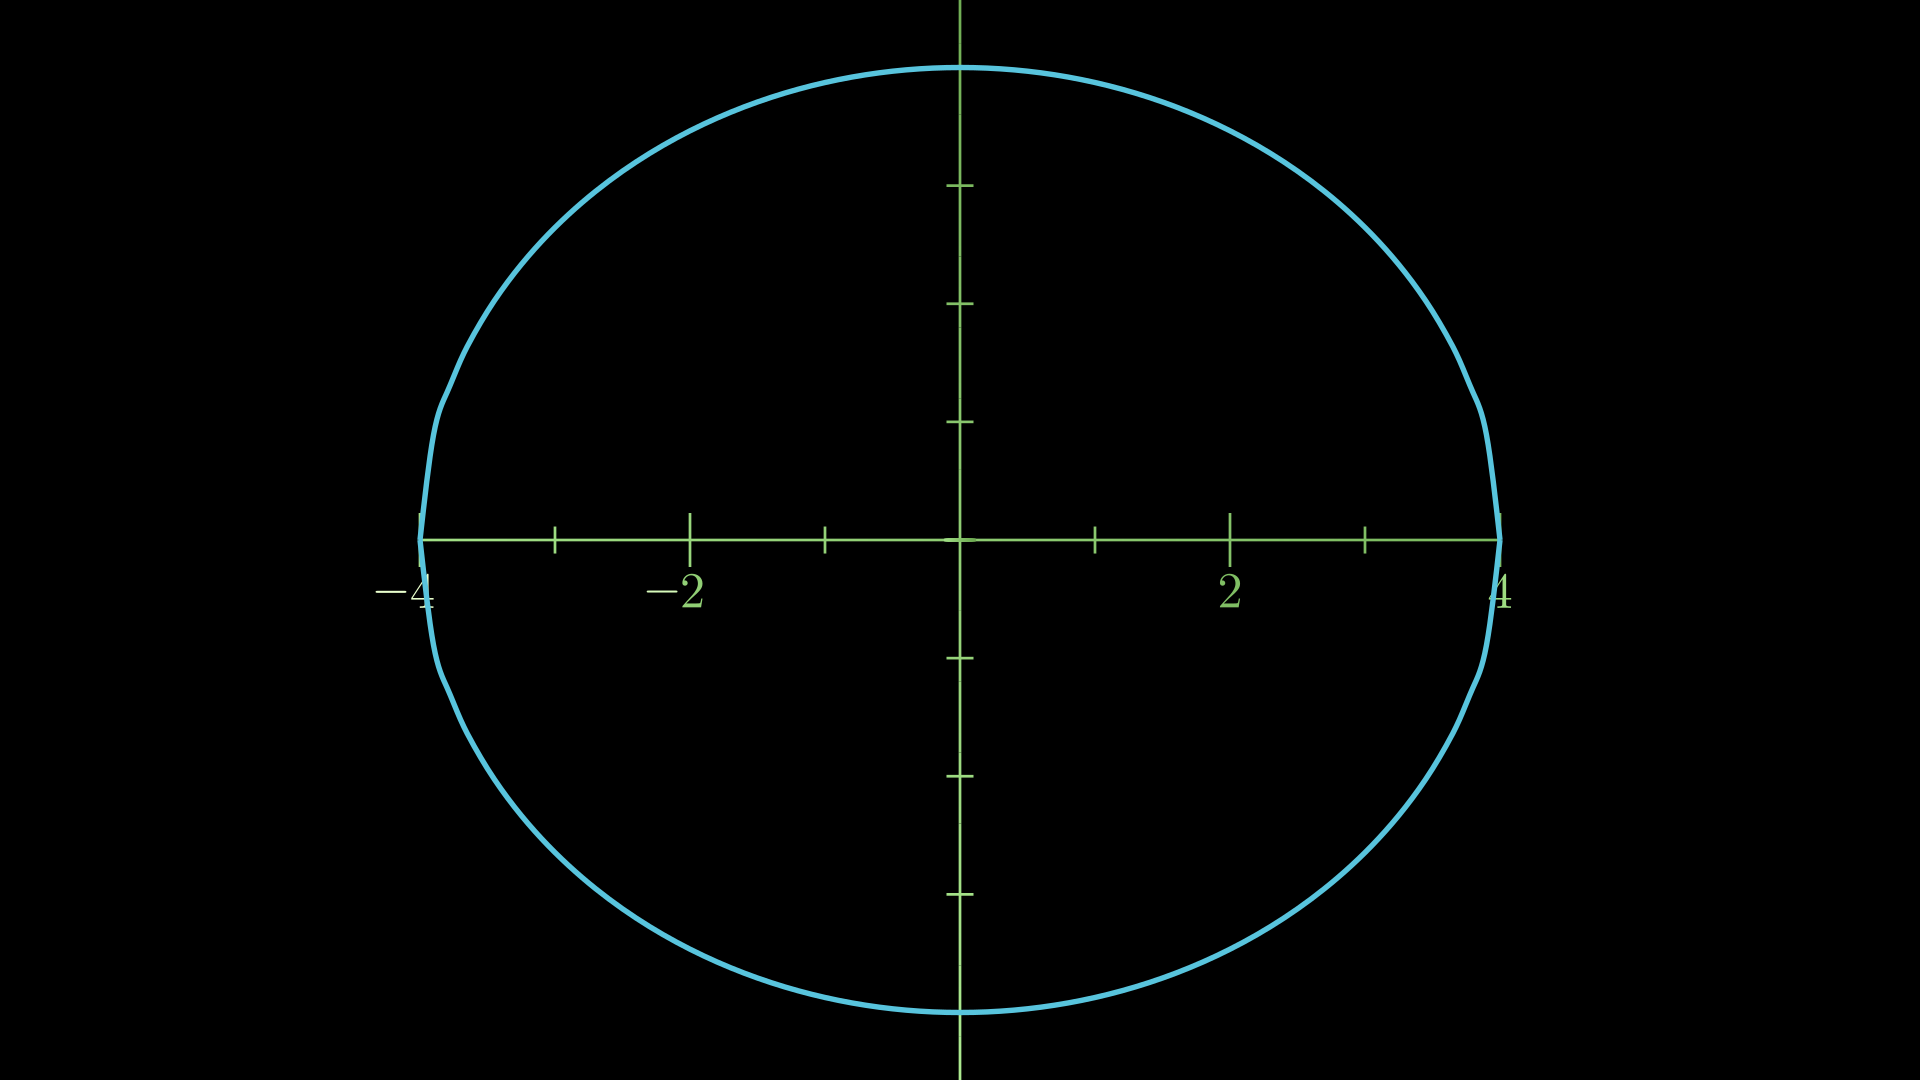 Circle radius 4